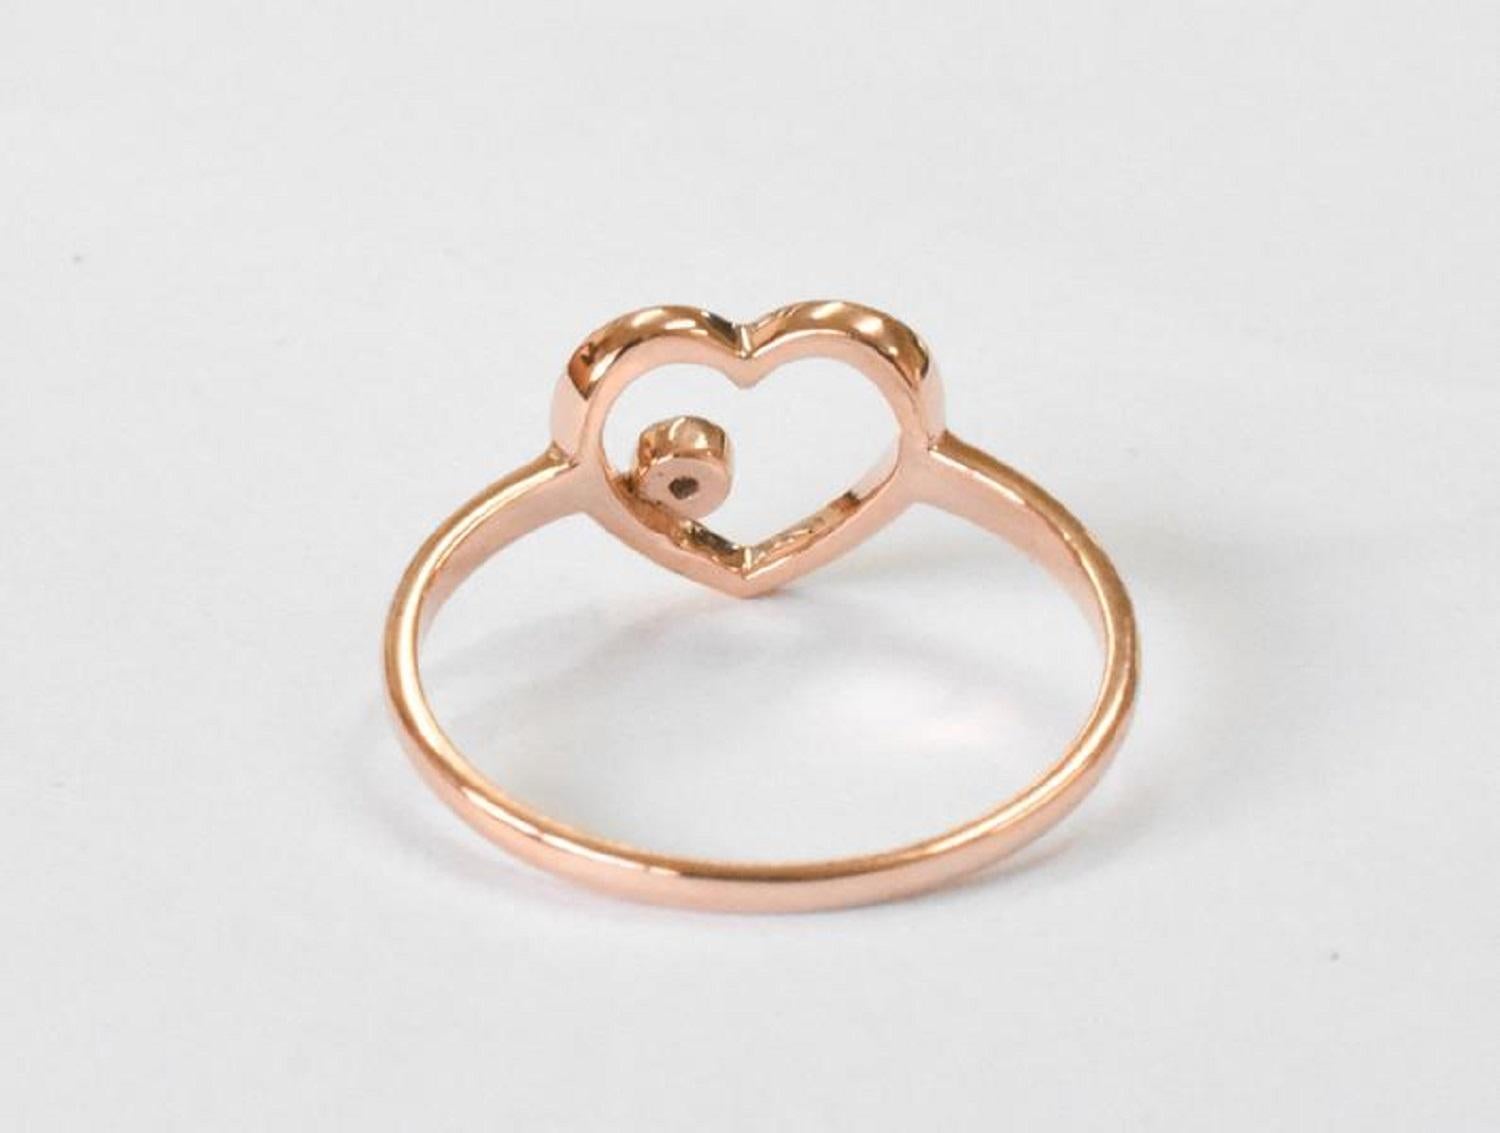 For Sale:  14k Rose Gold Diamond Heart Ring Minimal Heart Ring with Bezel Set Diamond 10